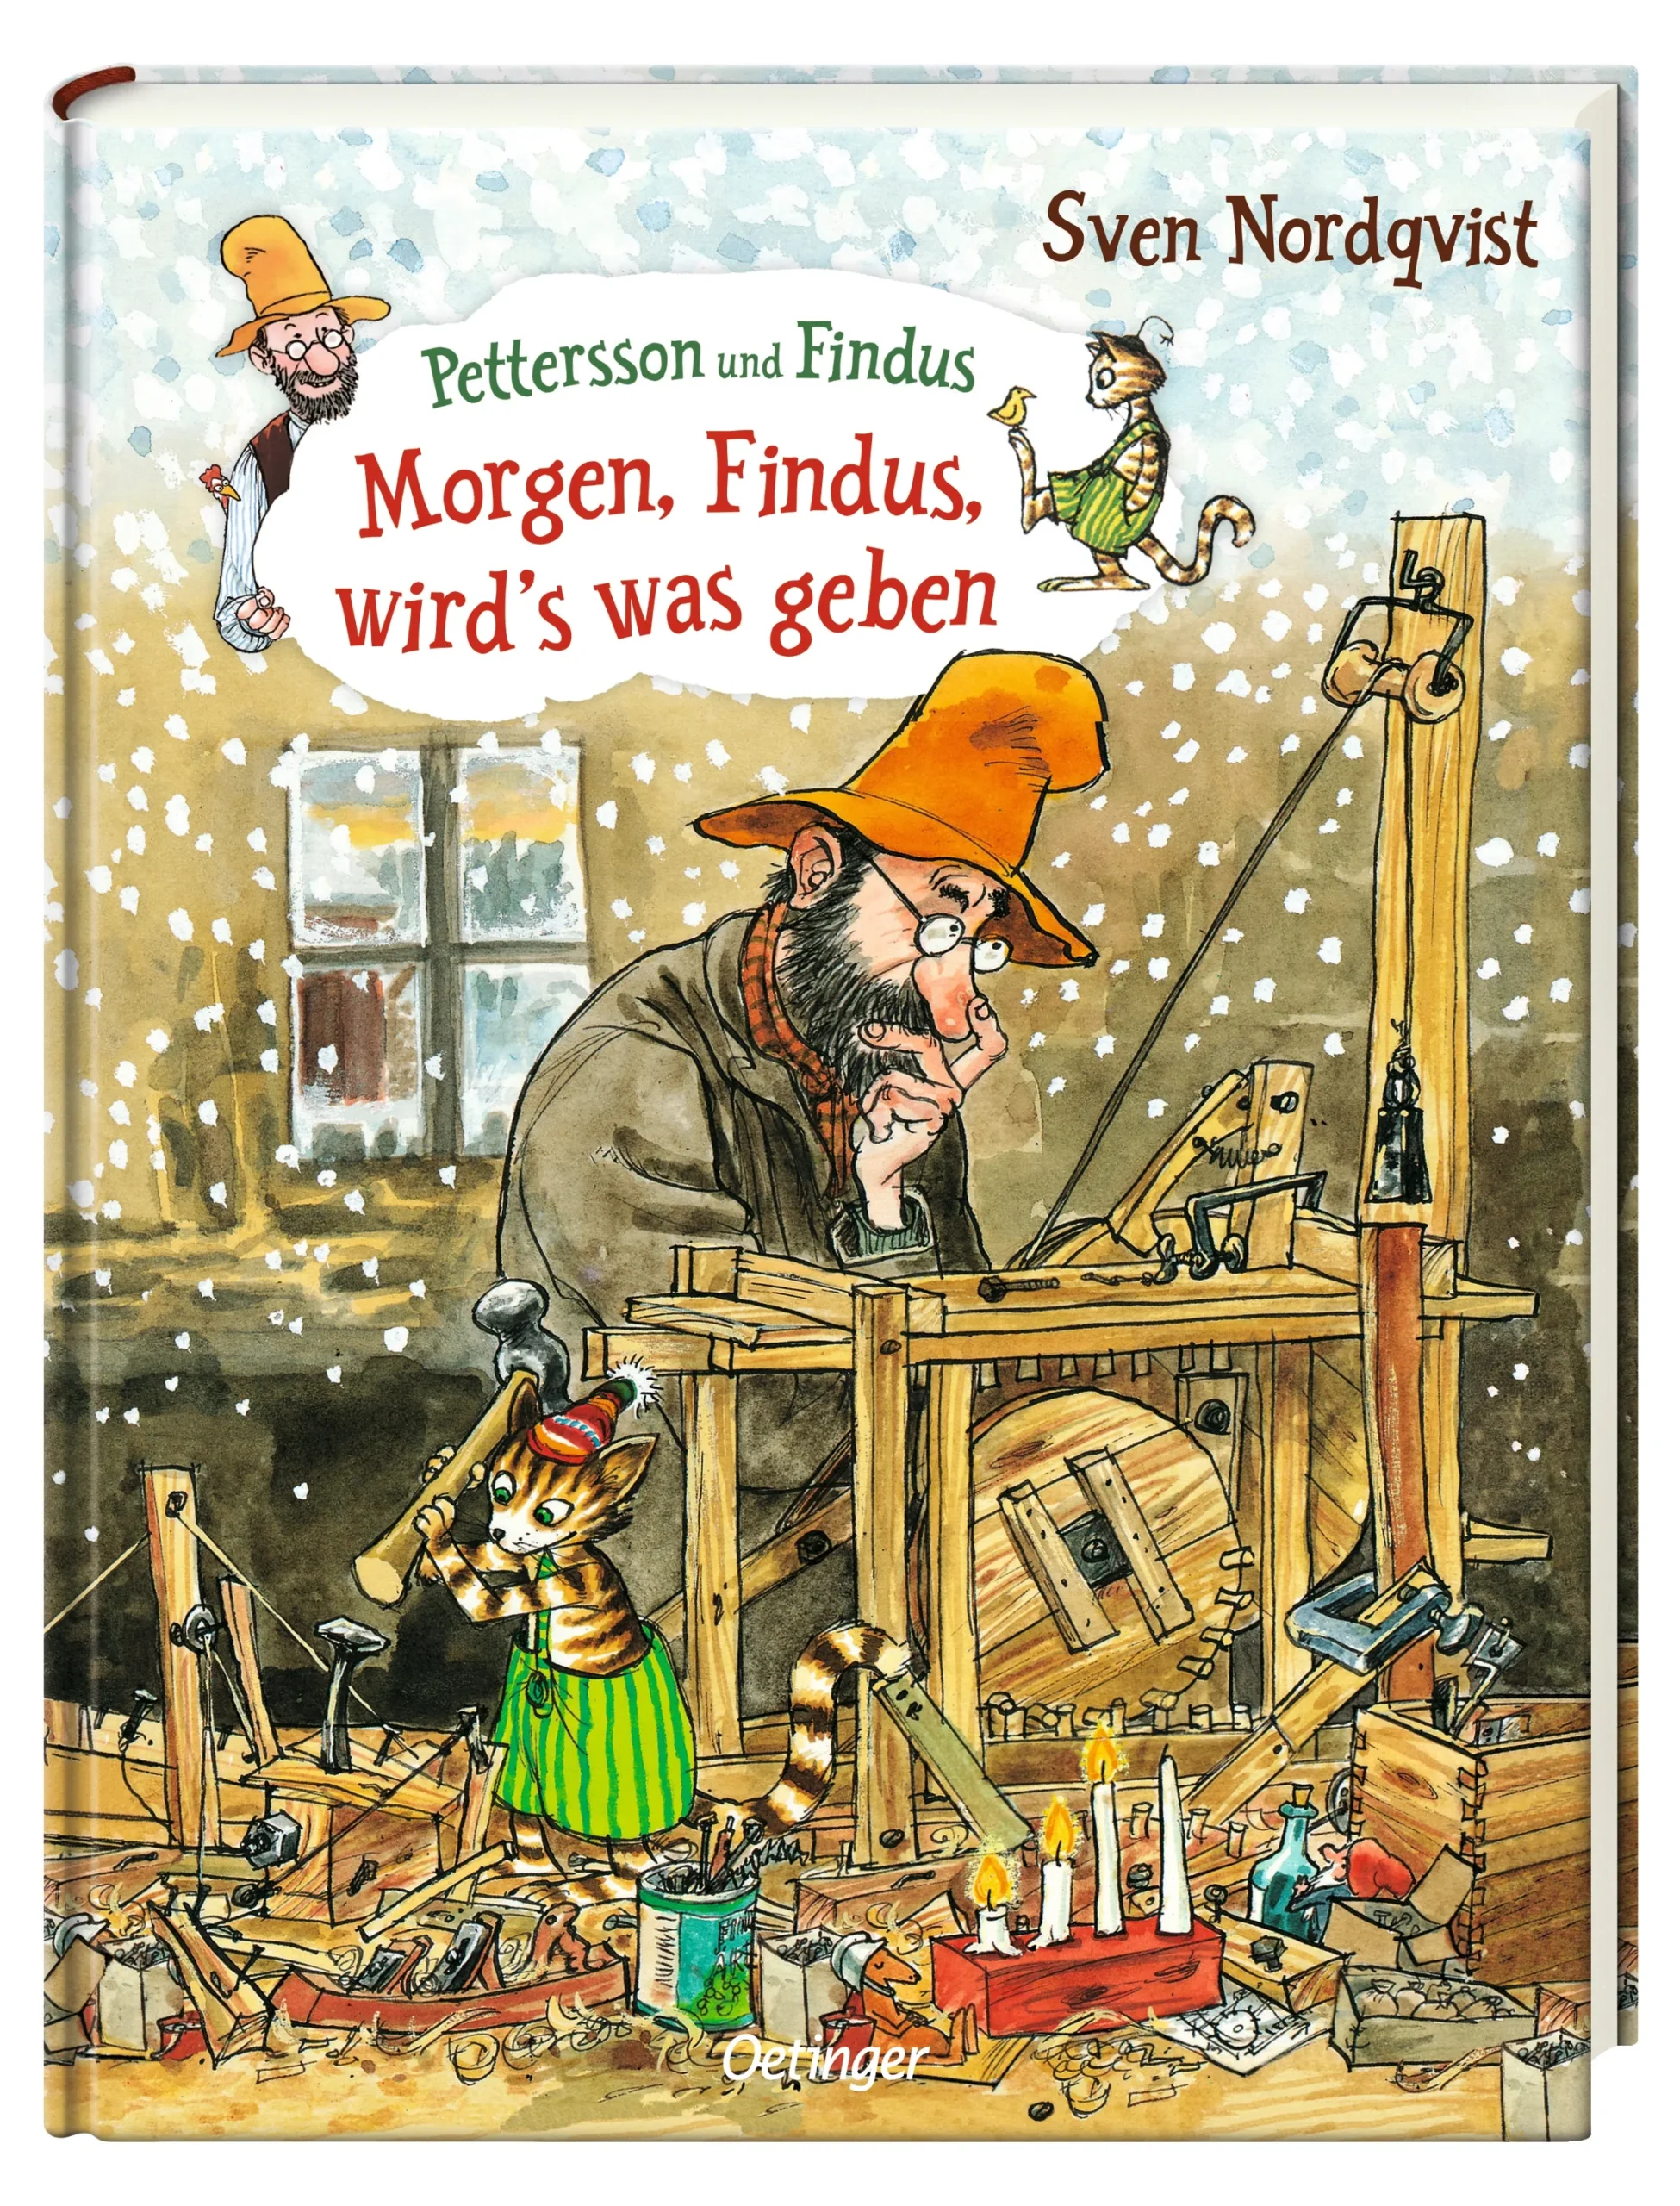 Morgen Findus wird's was geben von Sven Nordqvest ist eine umfassende Weihnachtsgeschichte.